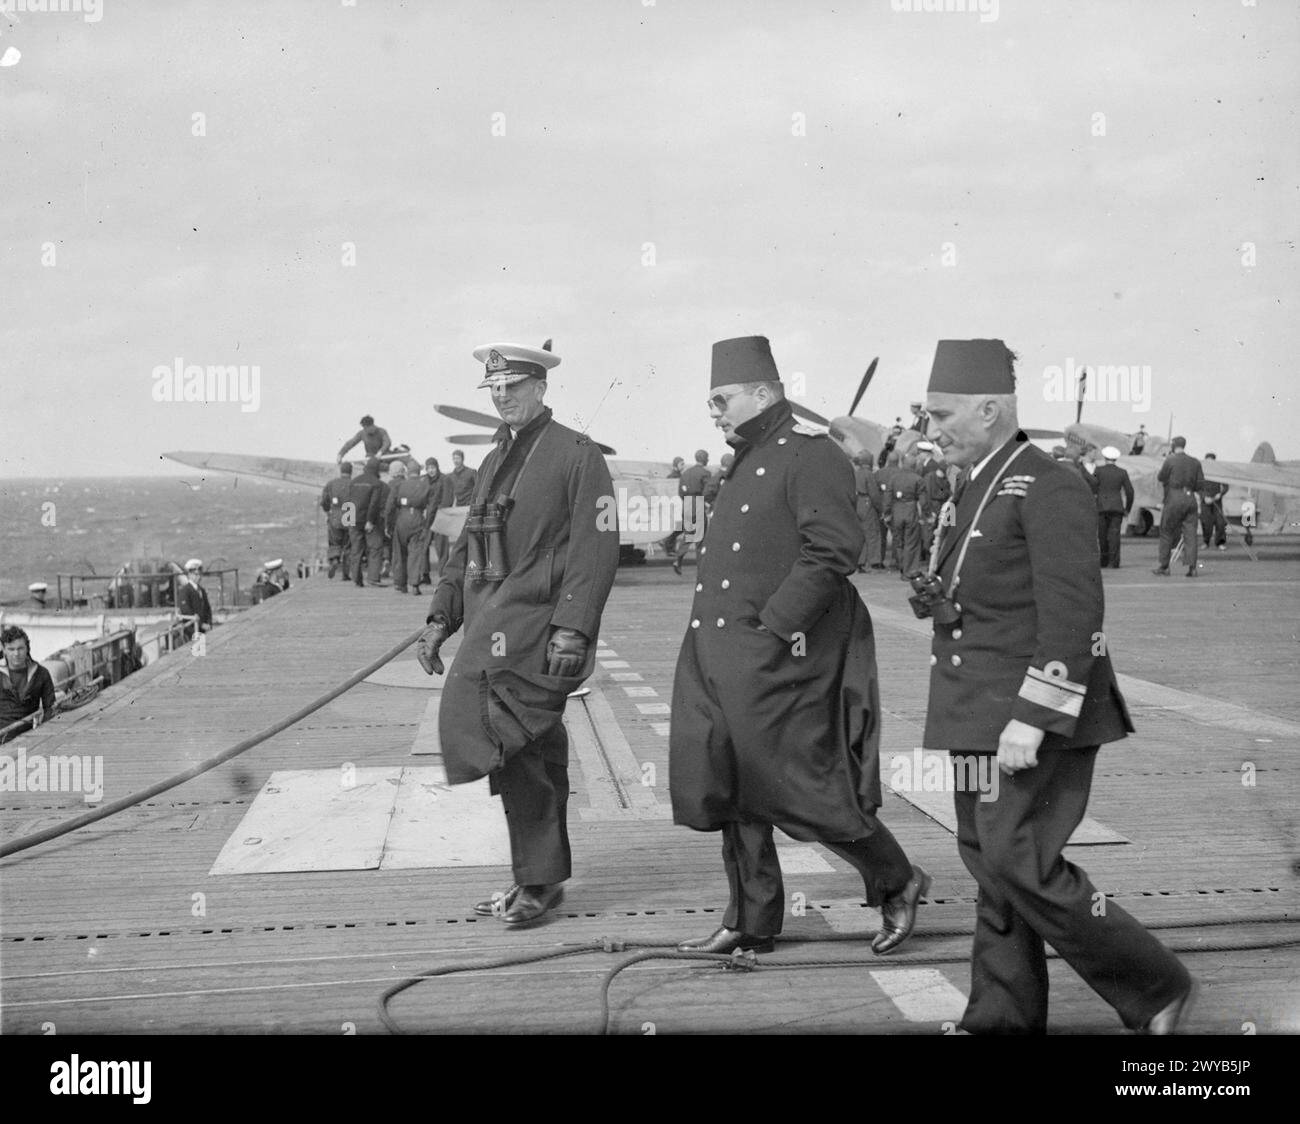 LE ROI FAROUK VISITE LE PORTE-AVIONS D'ESCORTE BRITANNIQUE. MARS 1945, À BORD DU HMS HUNTER, ALEXANDRIE, ÉGYPTE. - Le roi Farouk traverse le pont d'envol avec l'amiral Tennant, sur la droite se trouve le contre-amiral Salem Pash El Badan. , Banque D'Images